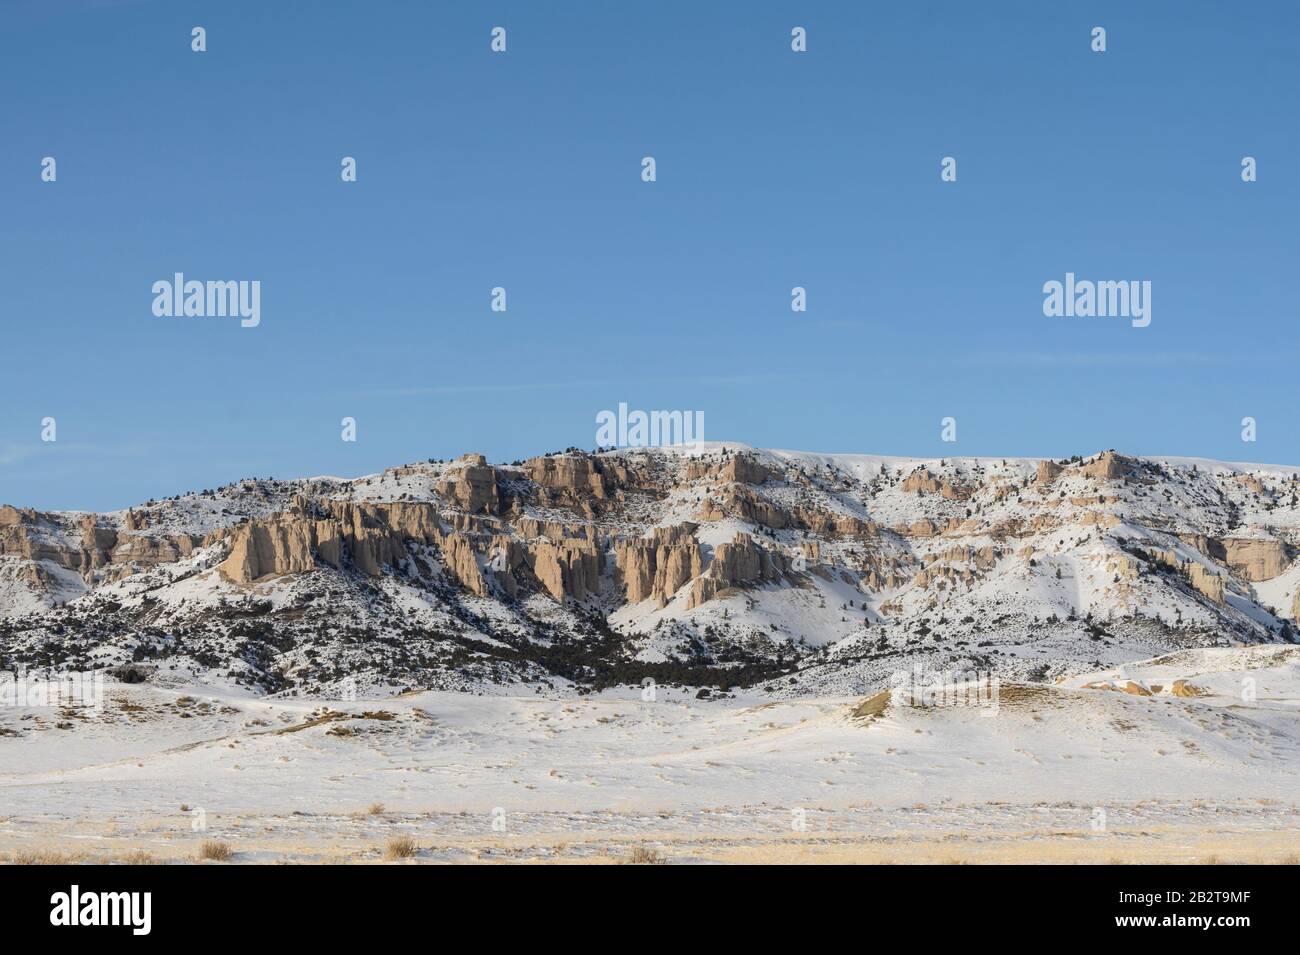 Wyoming paisaje de una colina nevada y afloramiento rocoso en una zona rural. Foto de stock